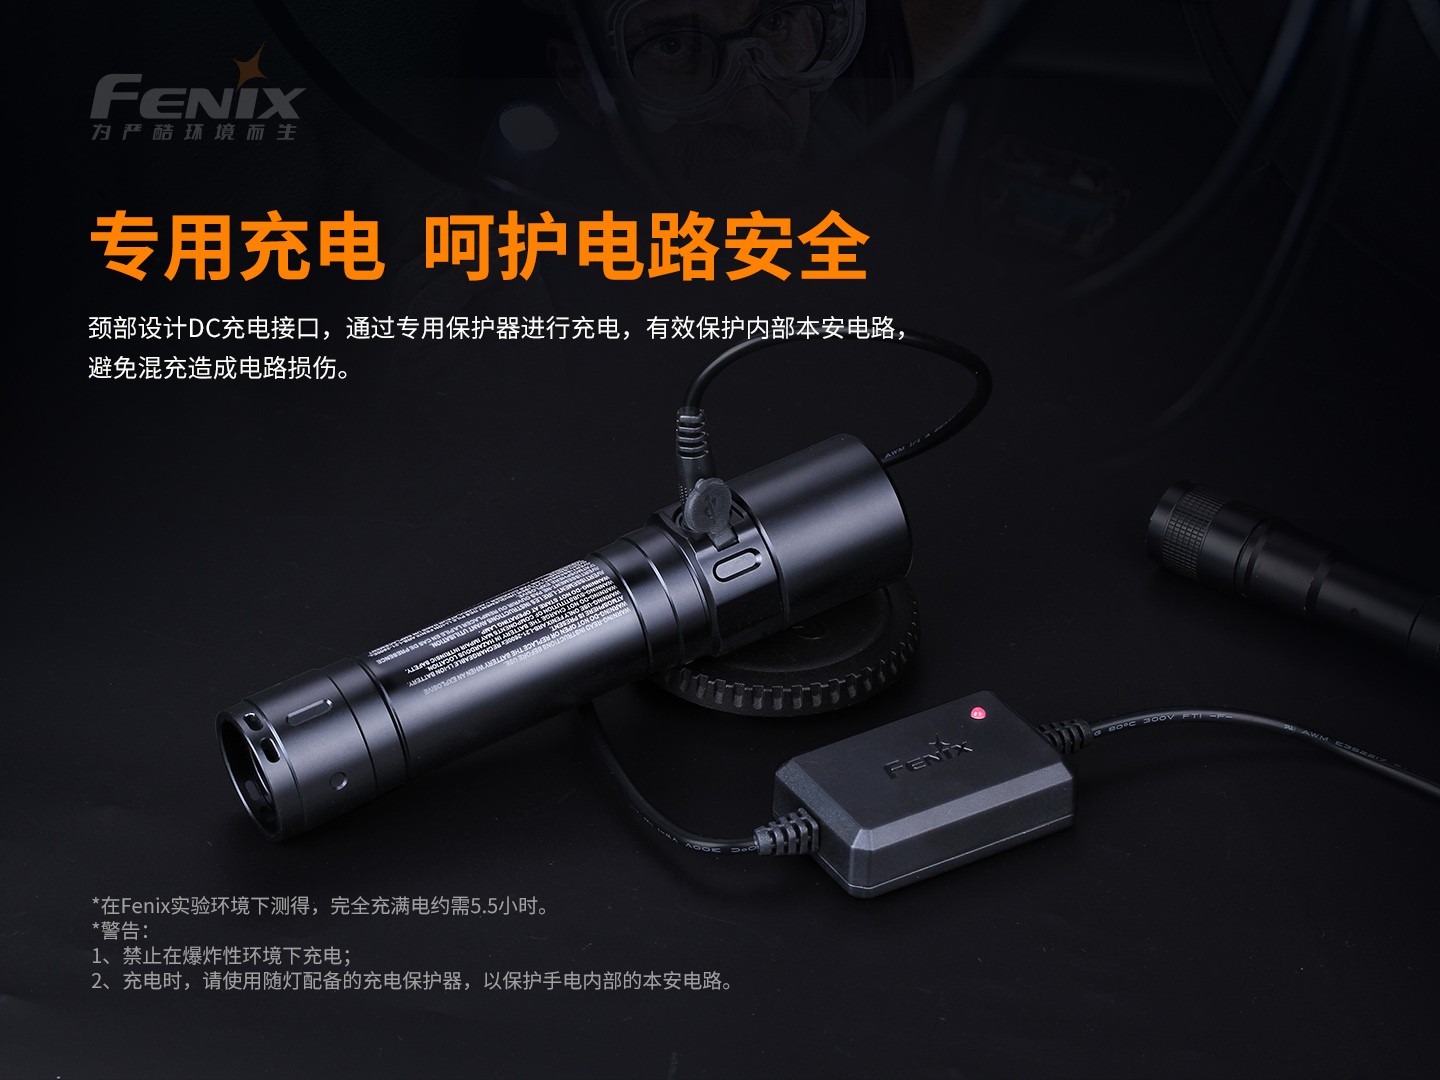 菲尼克斯（Fenix）WF30RE 高亮度 安全型防爆手电